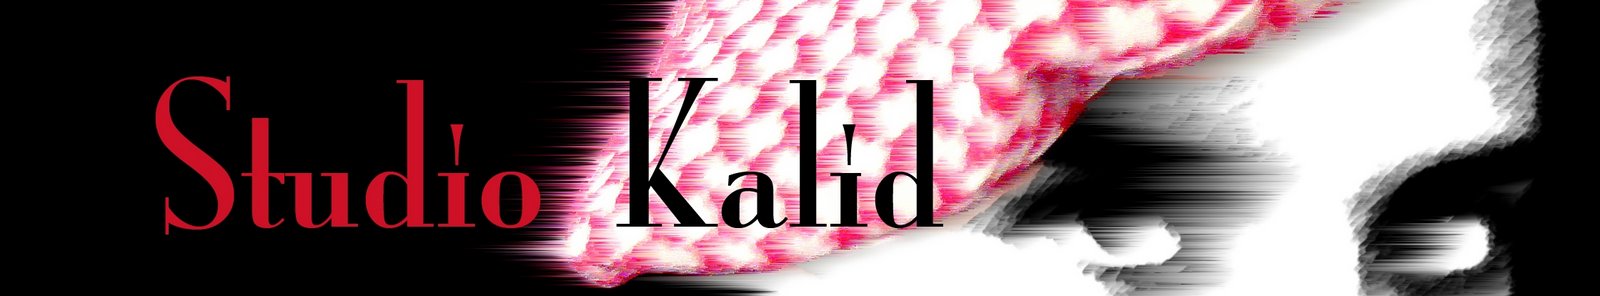 Studio Kalid